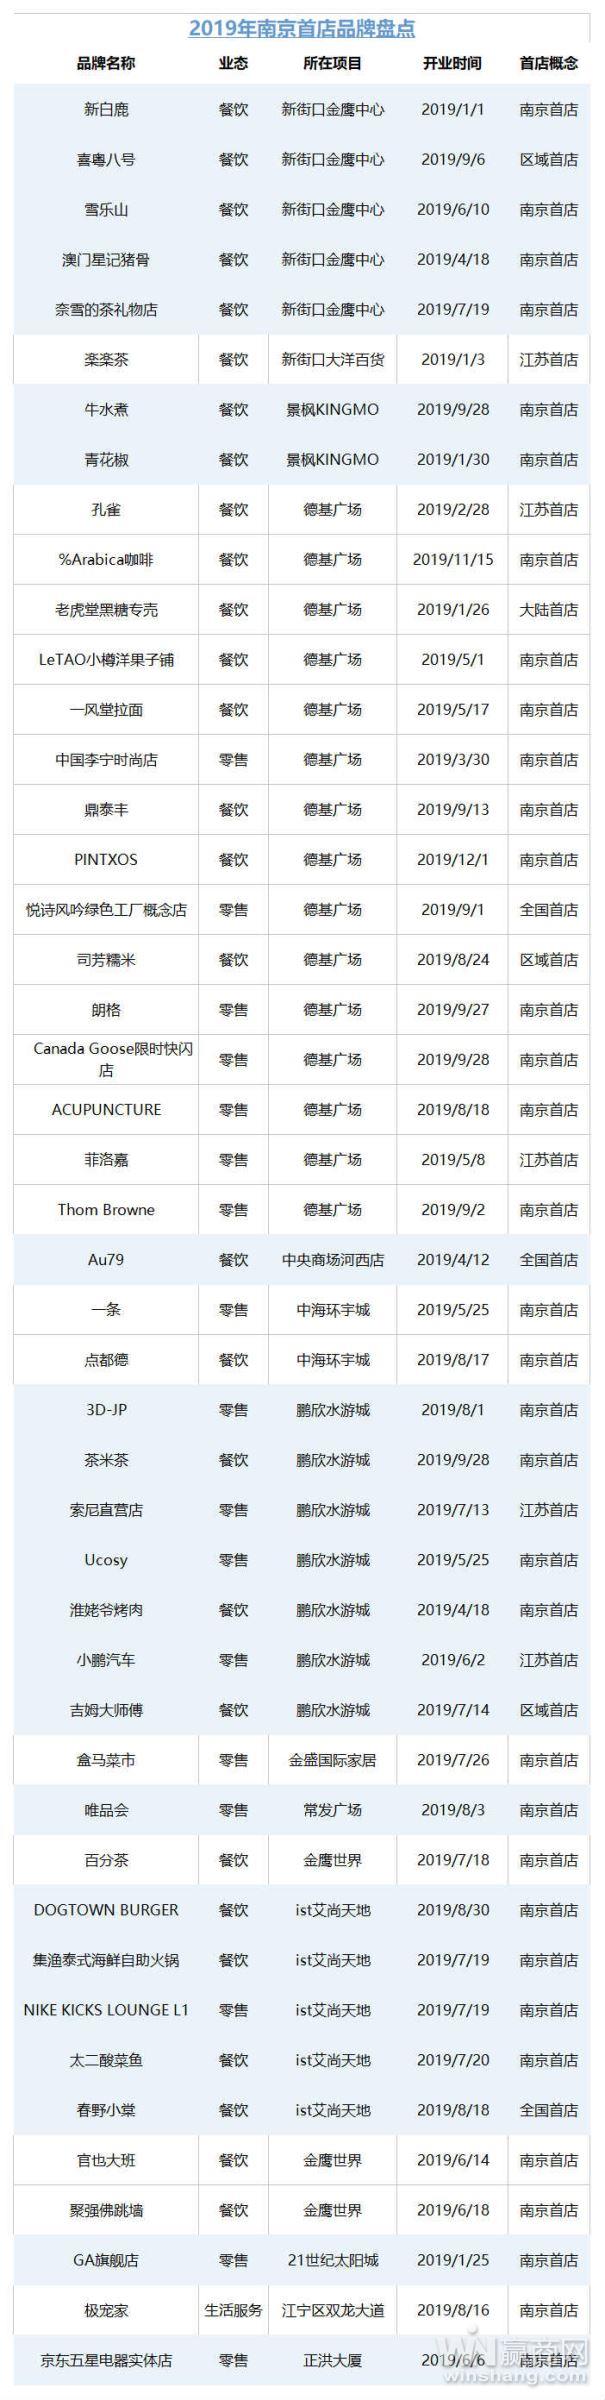 2019南京首店盘点：46家品牌入市，首店经济炙手可热